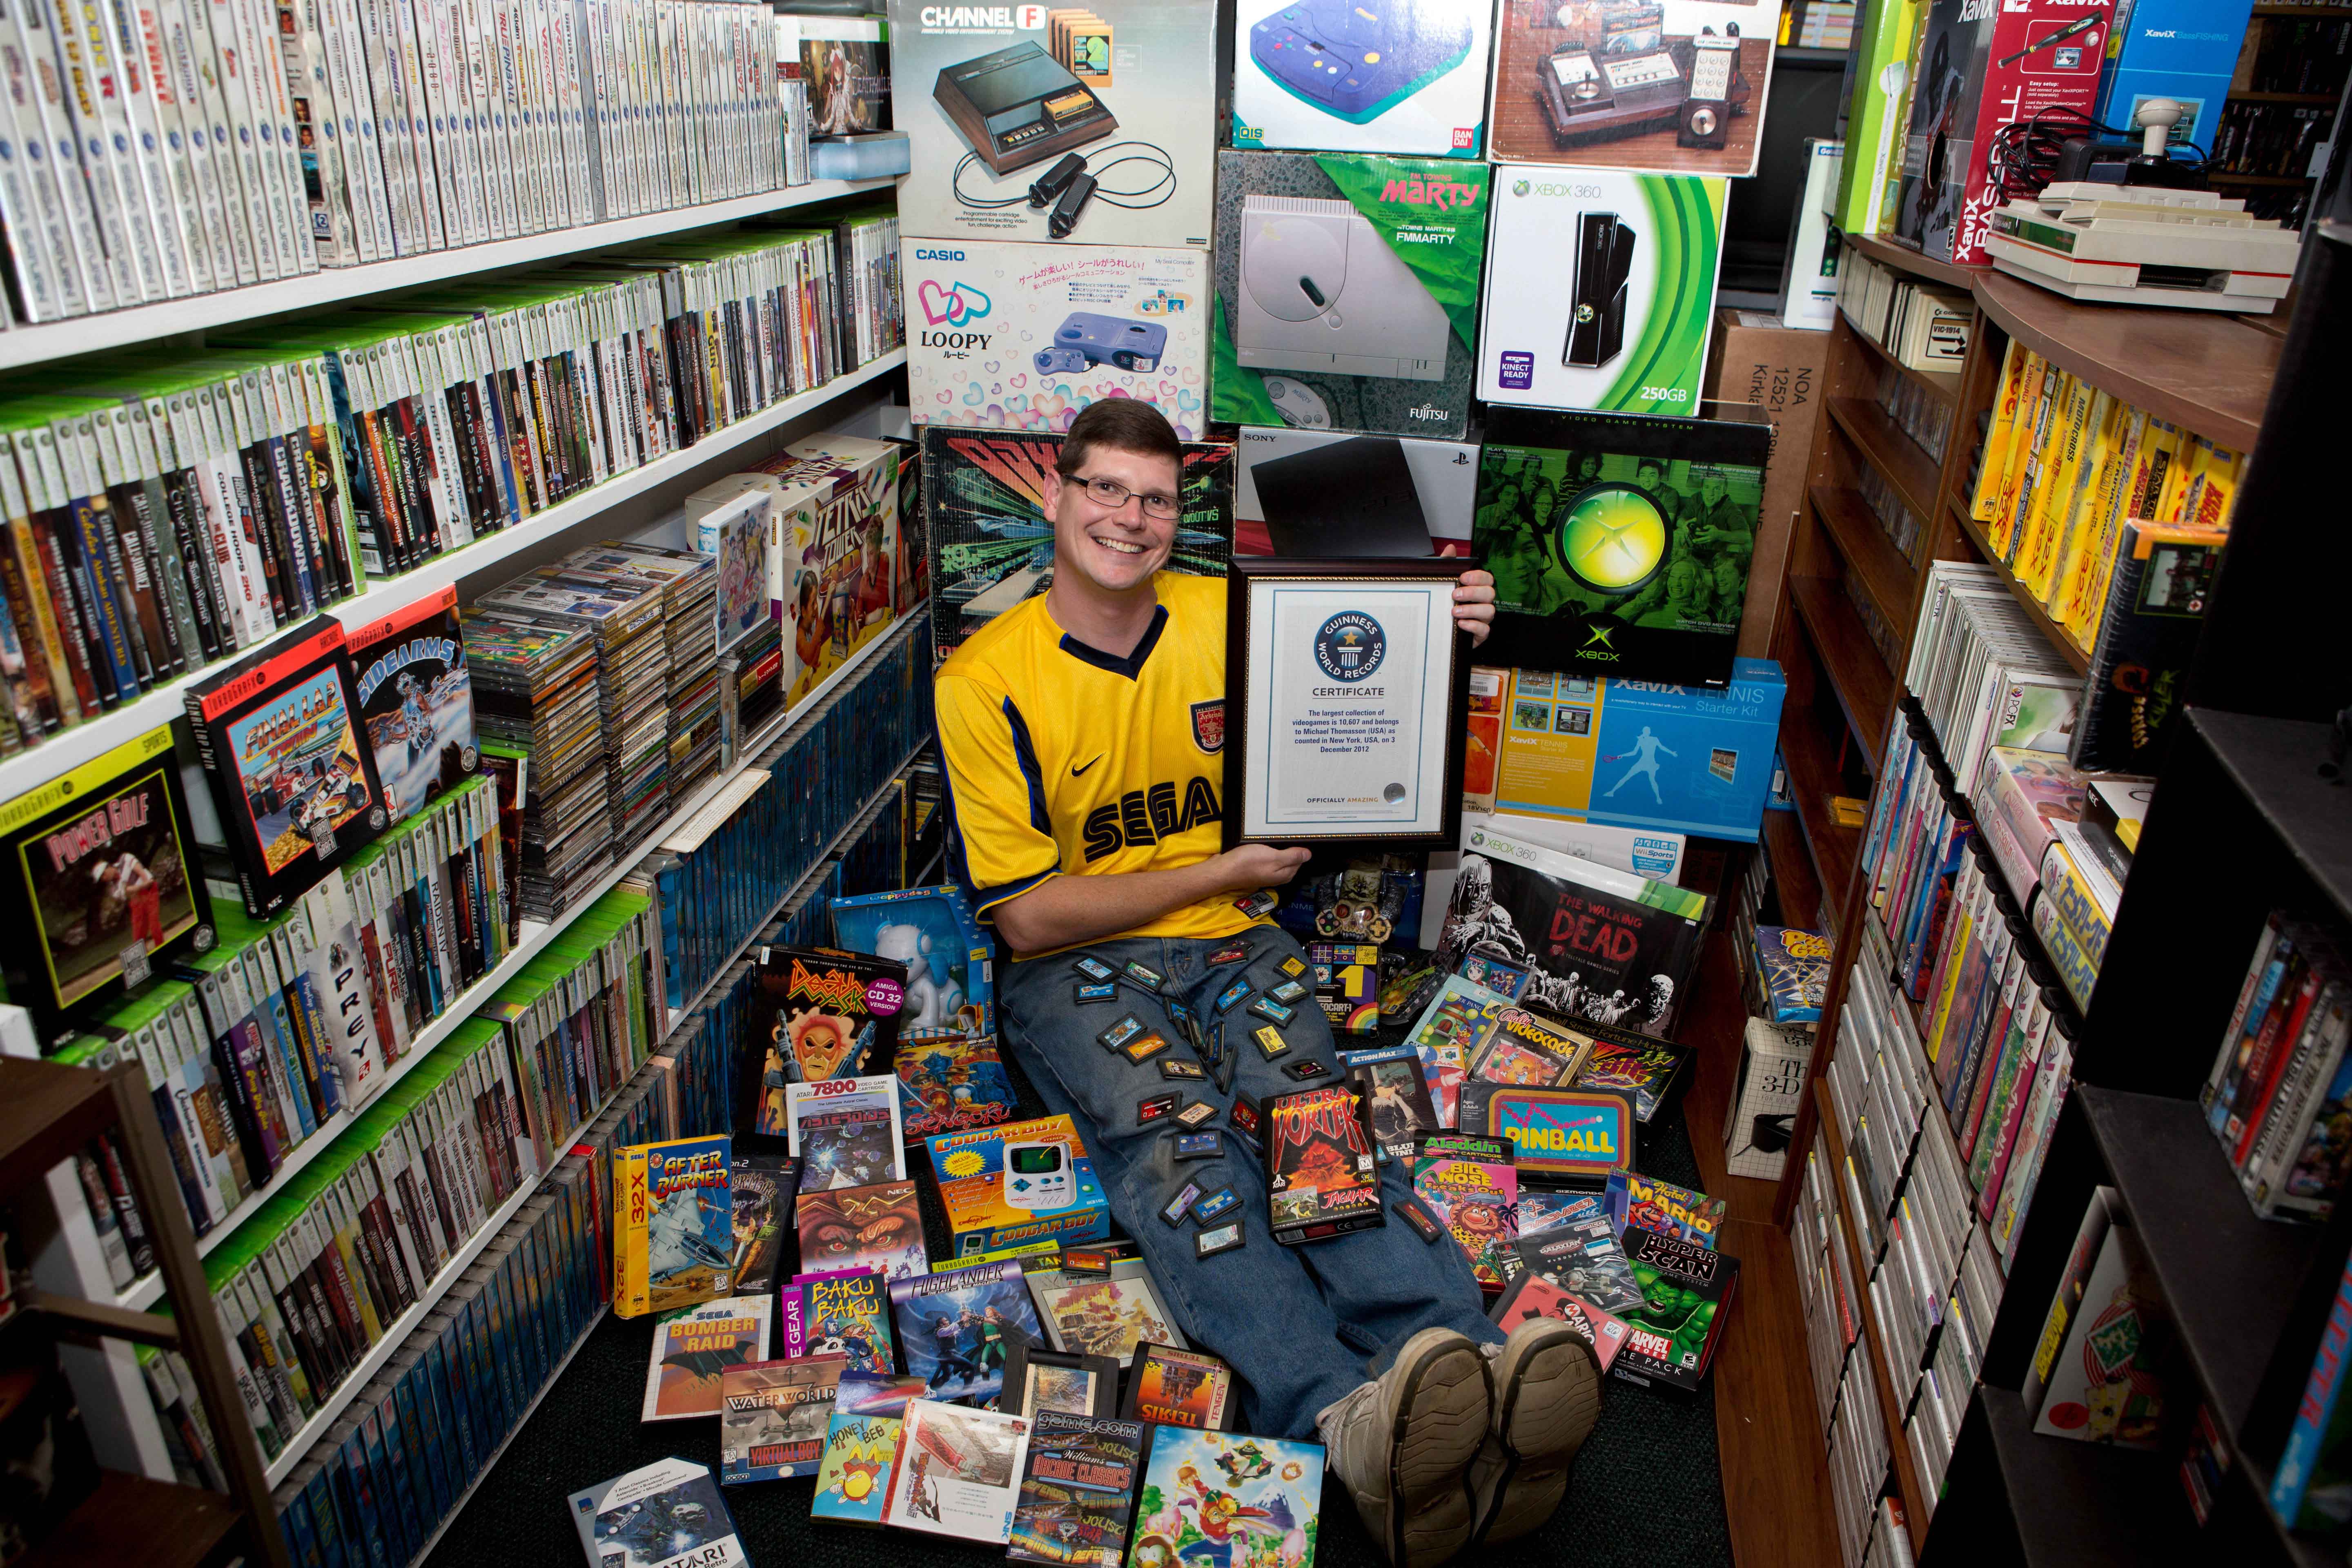 Video games books. Самая большая коллекция игр. Коллекционер игровых приставок. Коллекционирование компьютерных игр. Самая большая коллекция видеоигр в мире.